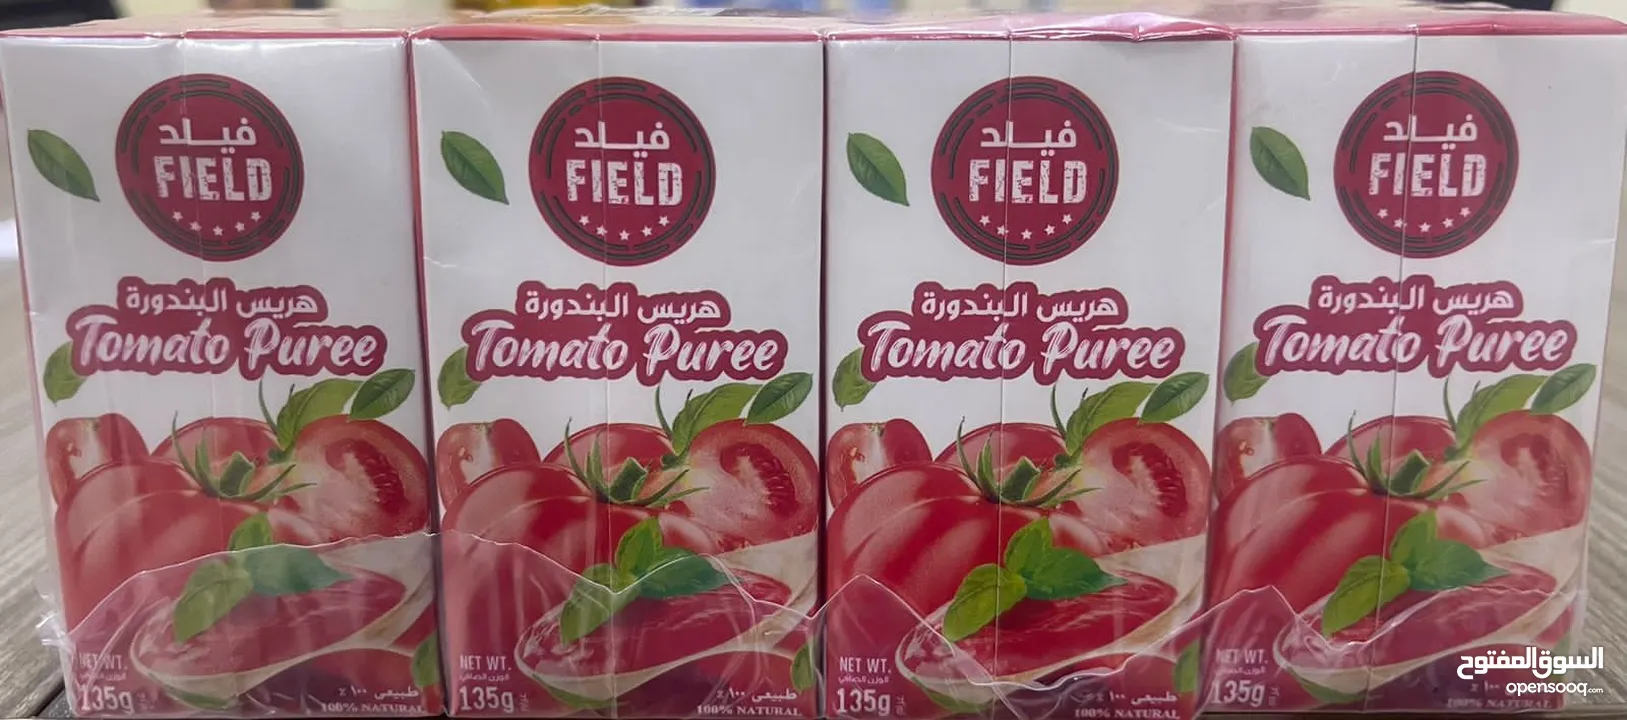 معجون طماطم سعر جملة الجملة  Tomato puree  Great price